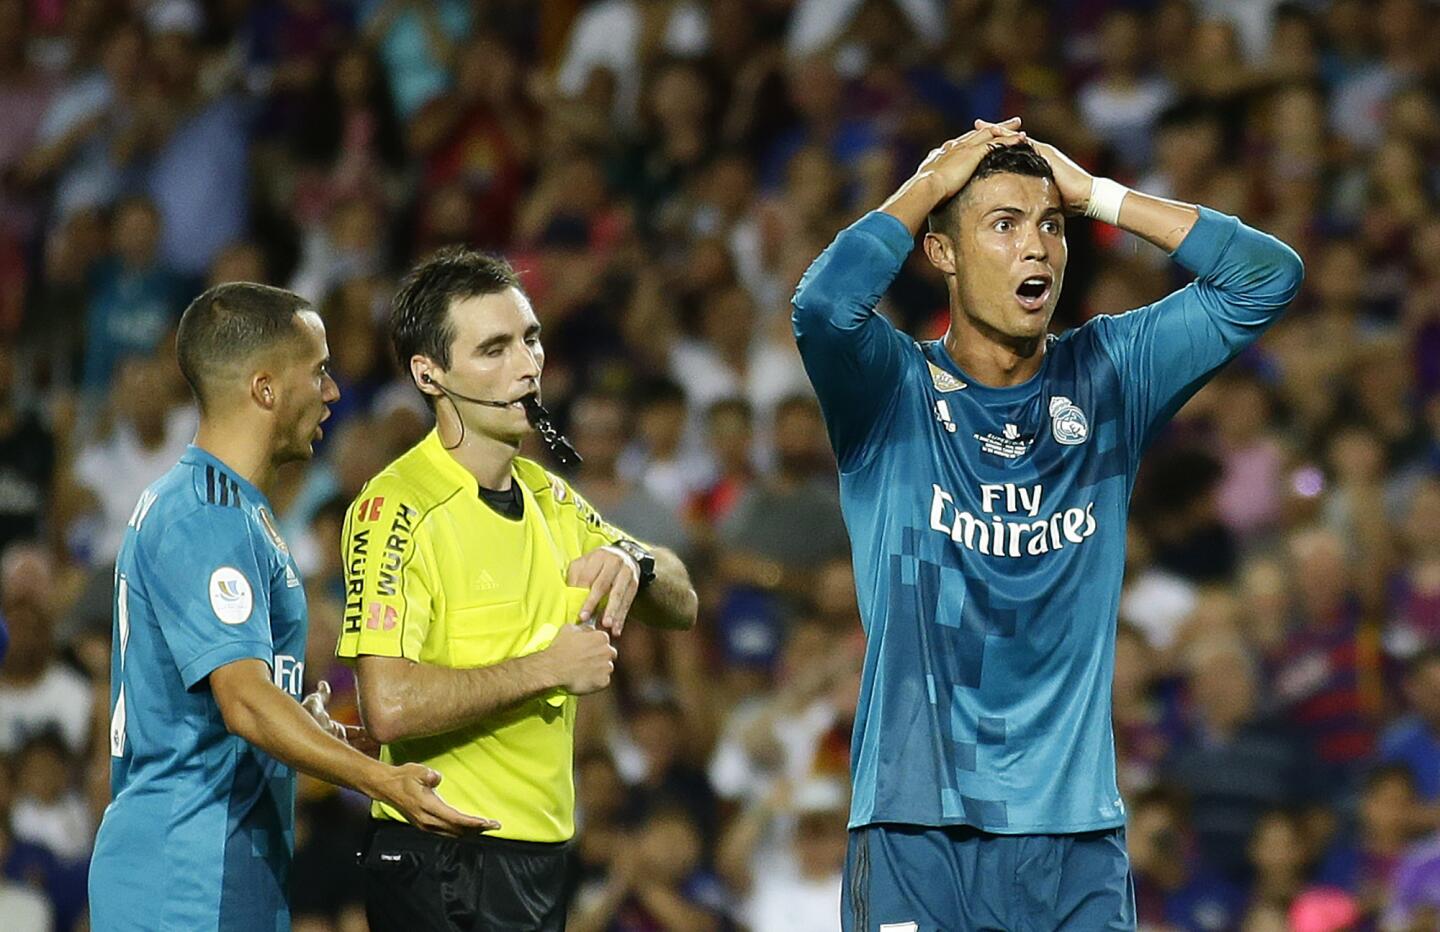 El delantero del Real Madrid Cristiano Ronaldo se lamenta tras ser expulsado al recibir la tarjeta roja. AP